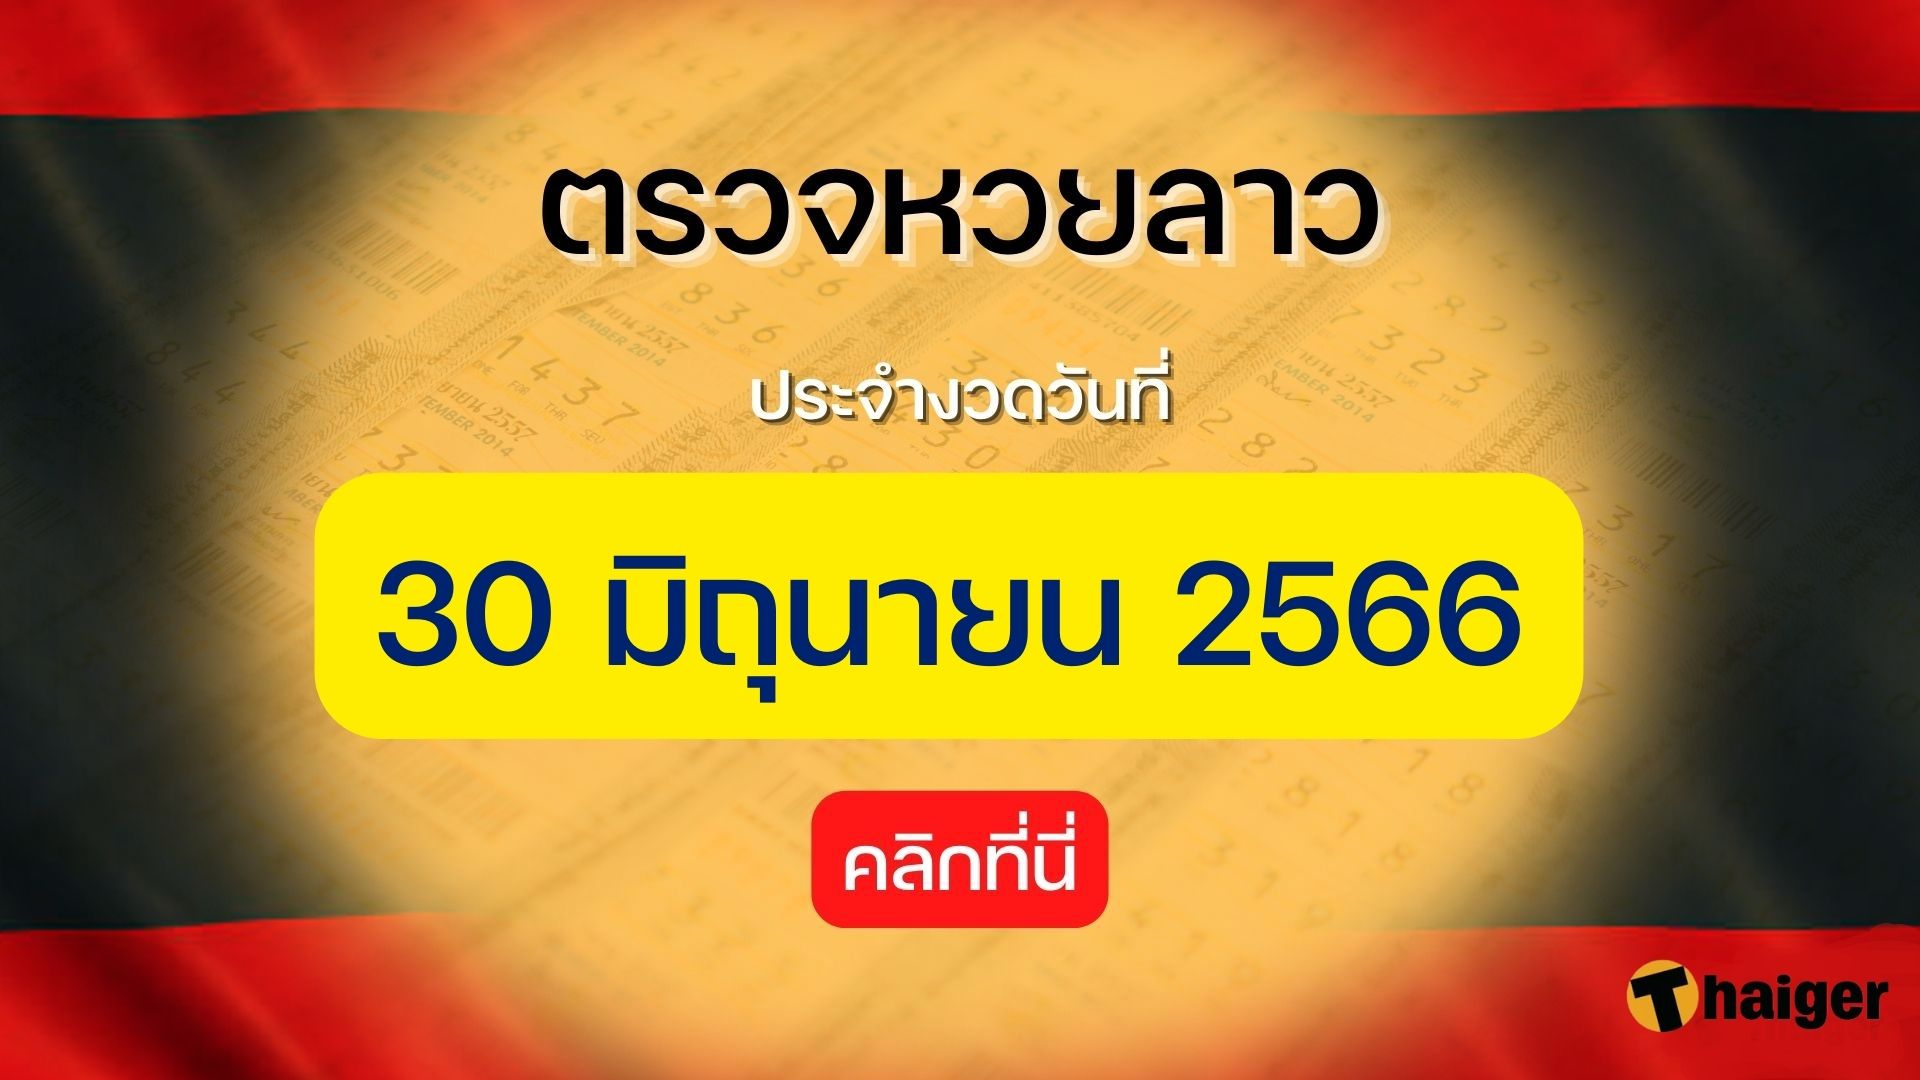 ตรวจหวยลาว 30 มิถุนายน 2566 ถ่ายทอดสดหวยลาววันนี้ | Thaiger ข่าวไทย